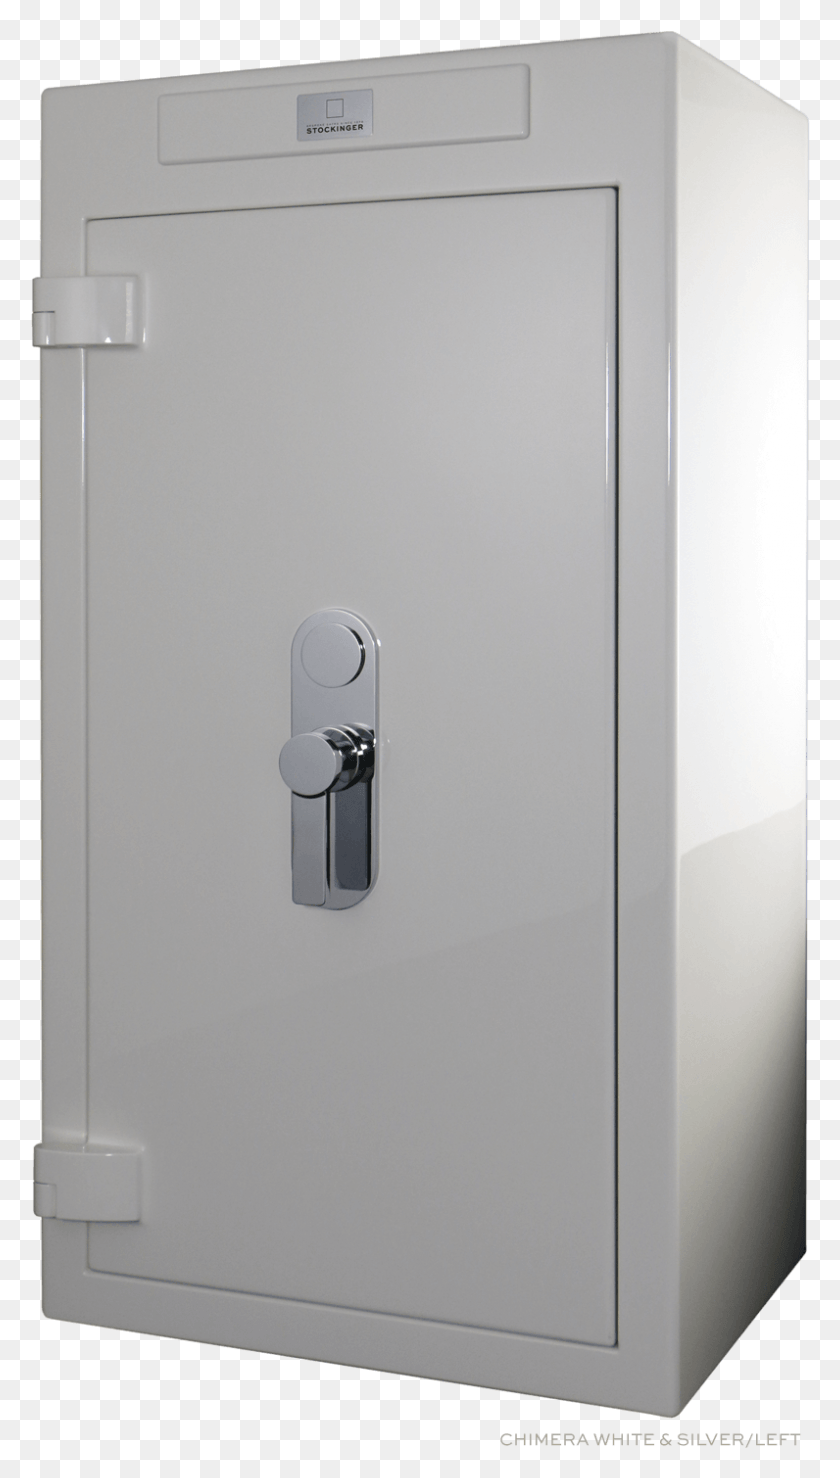 796x1448 Личный Сейф Впечатляющий И Представительный, Шкафчик, Дверь, Холодильник Hd Png Скачать